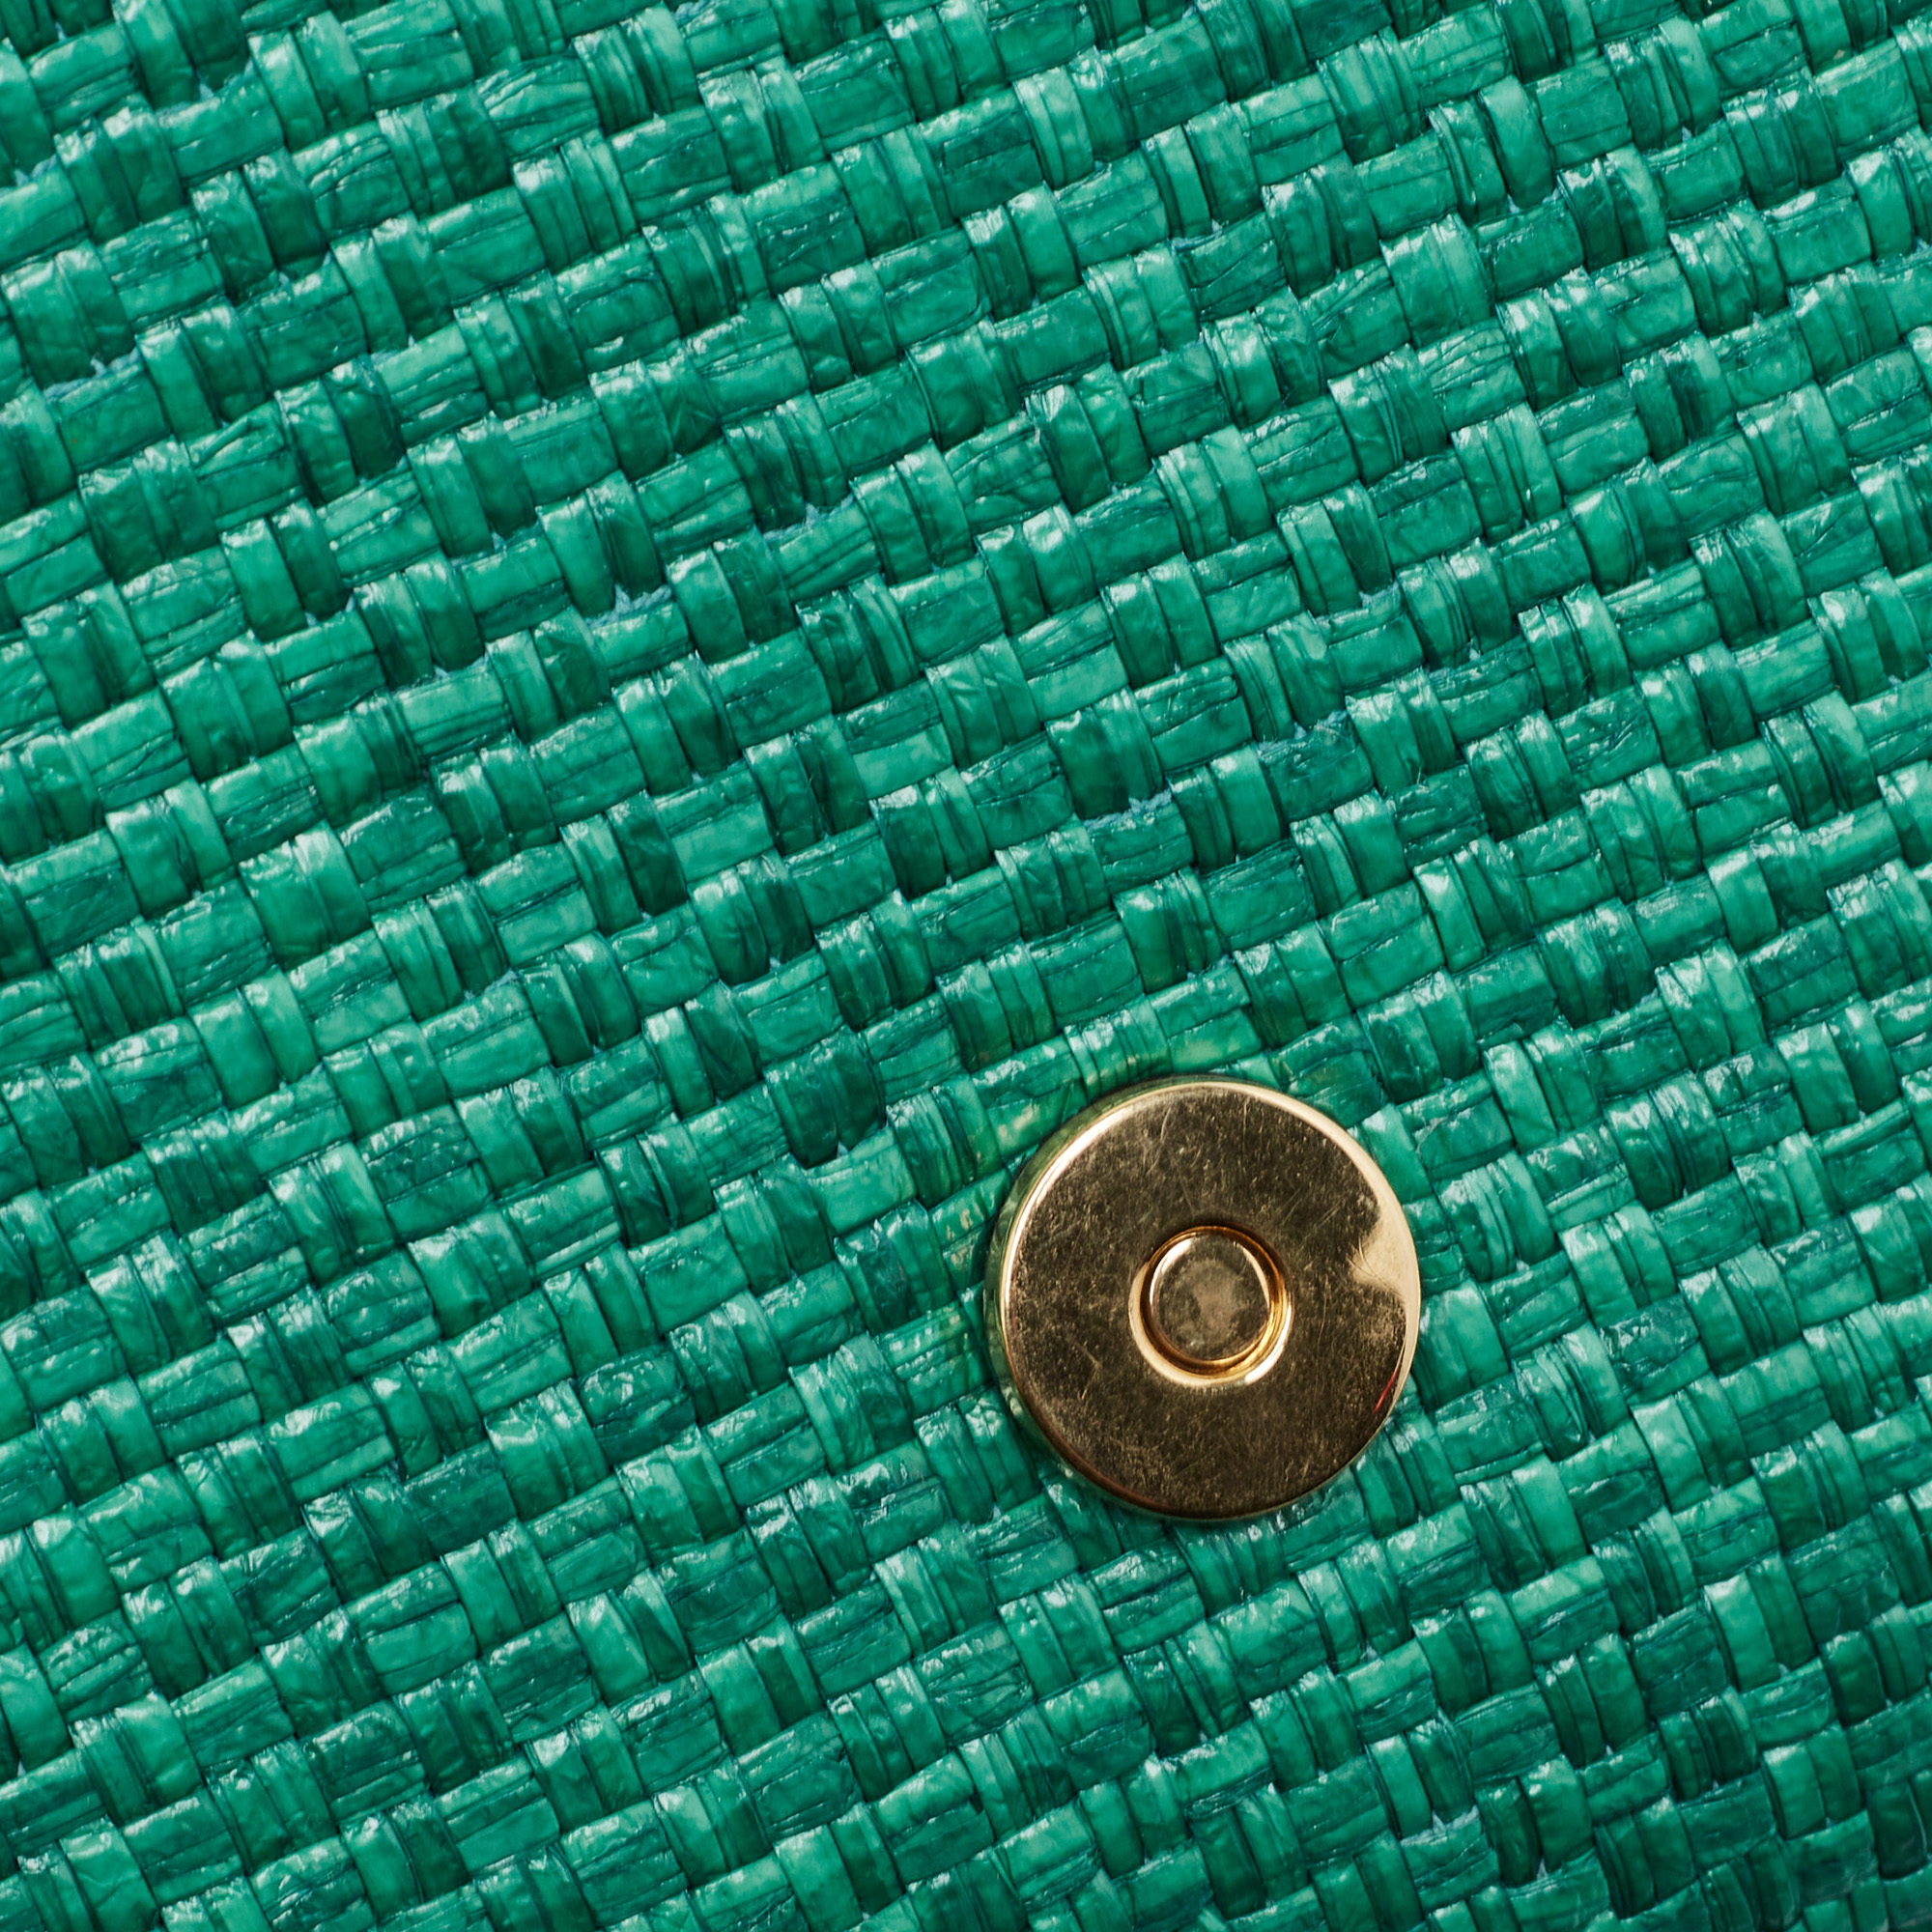 Gucci Green Raffia Horsebit 1955 Chain Shoulder Bag